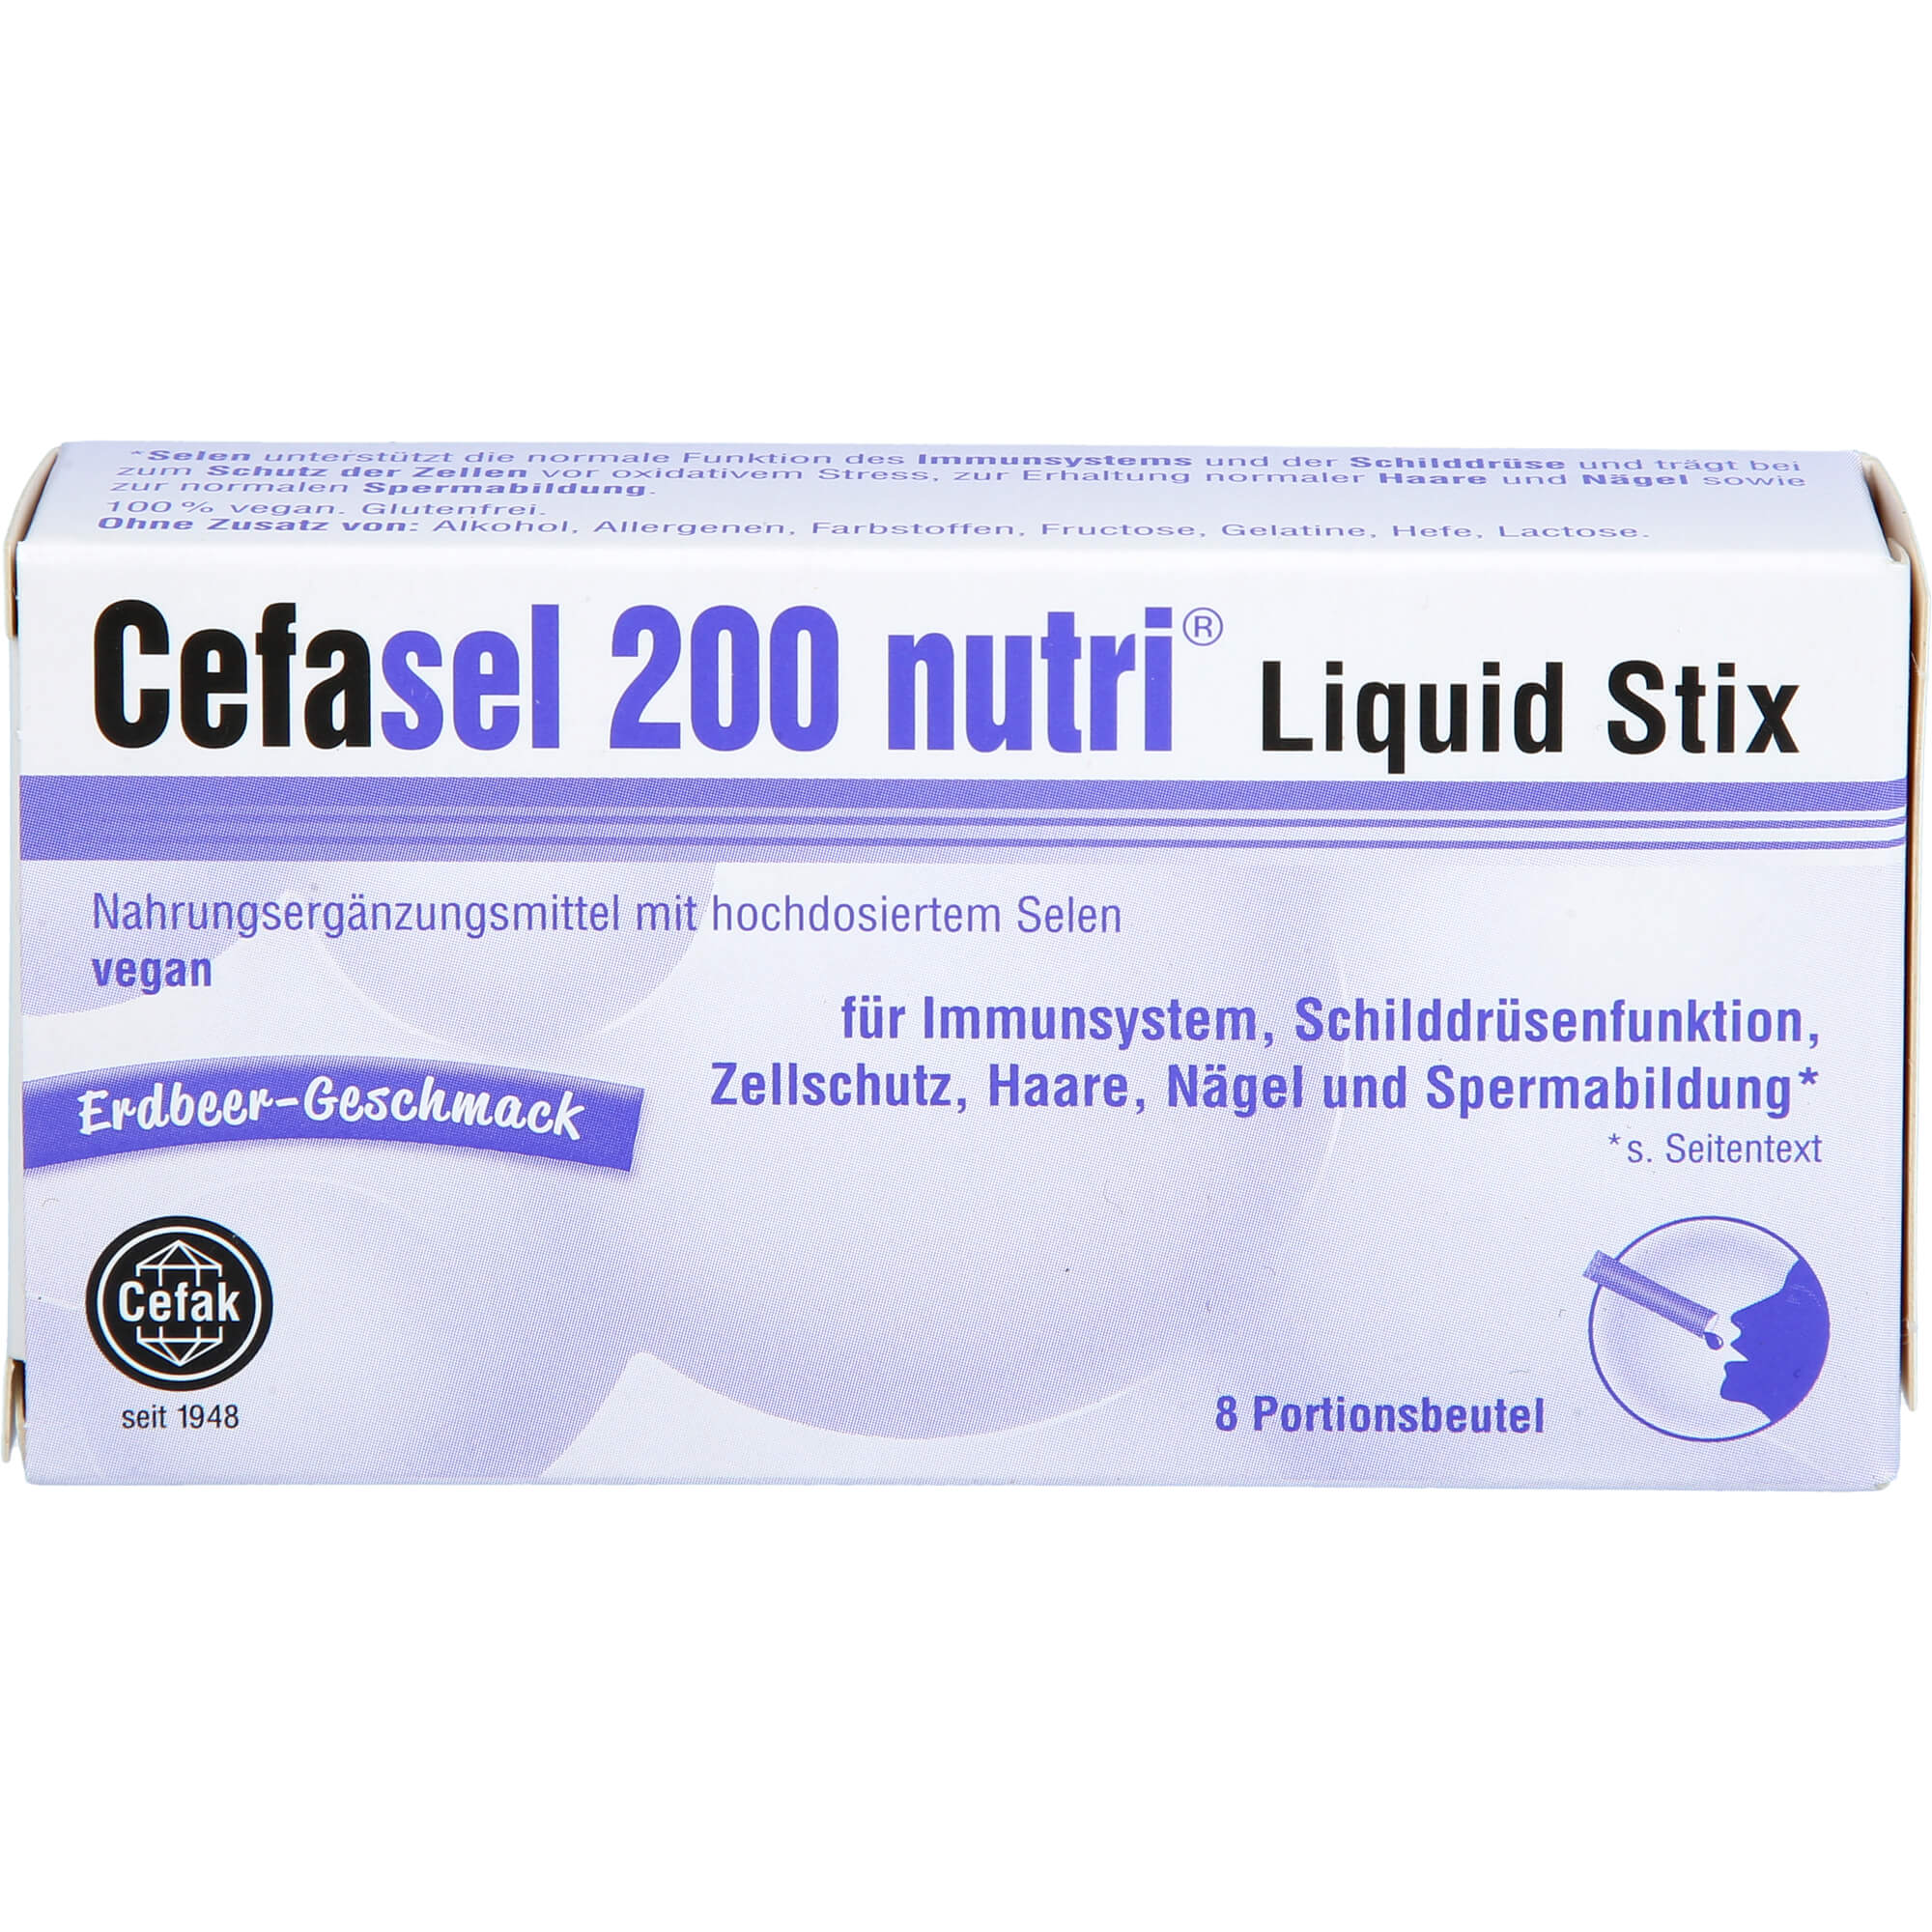 CEFASEL 200 nutri Liquid Stix